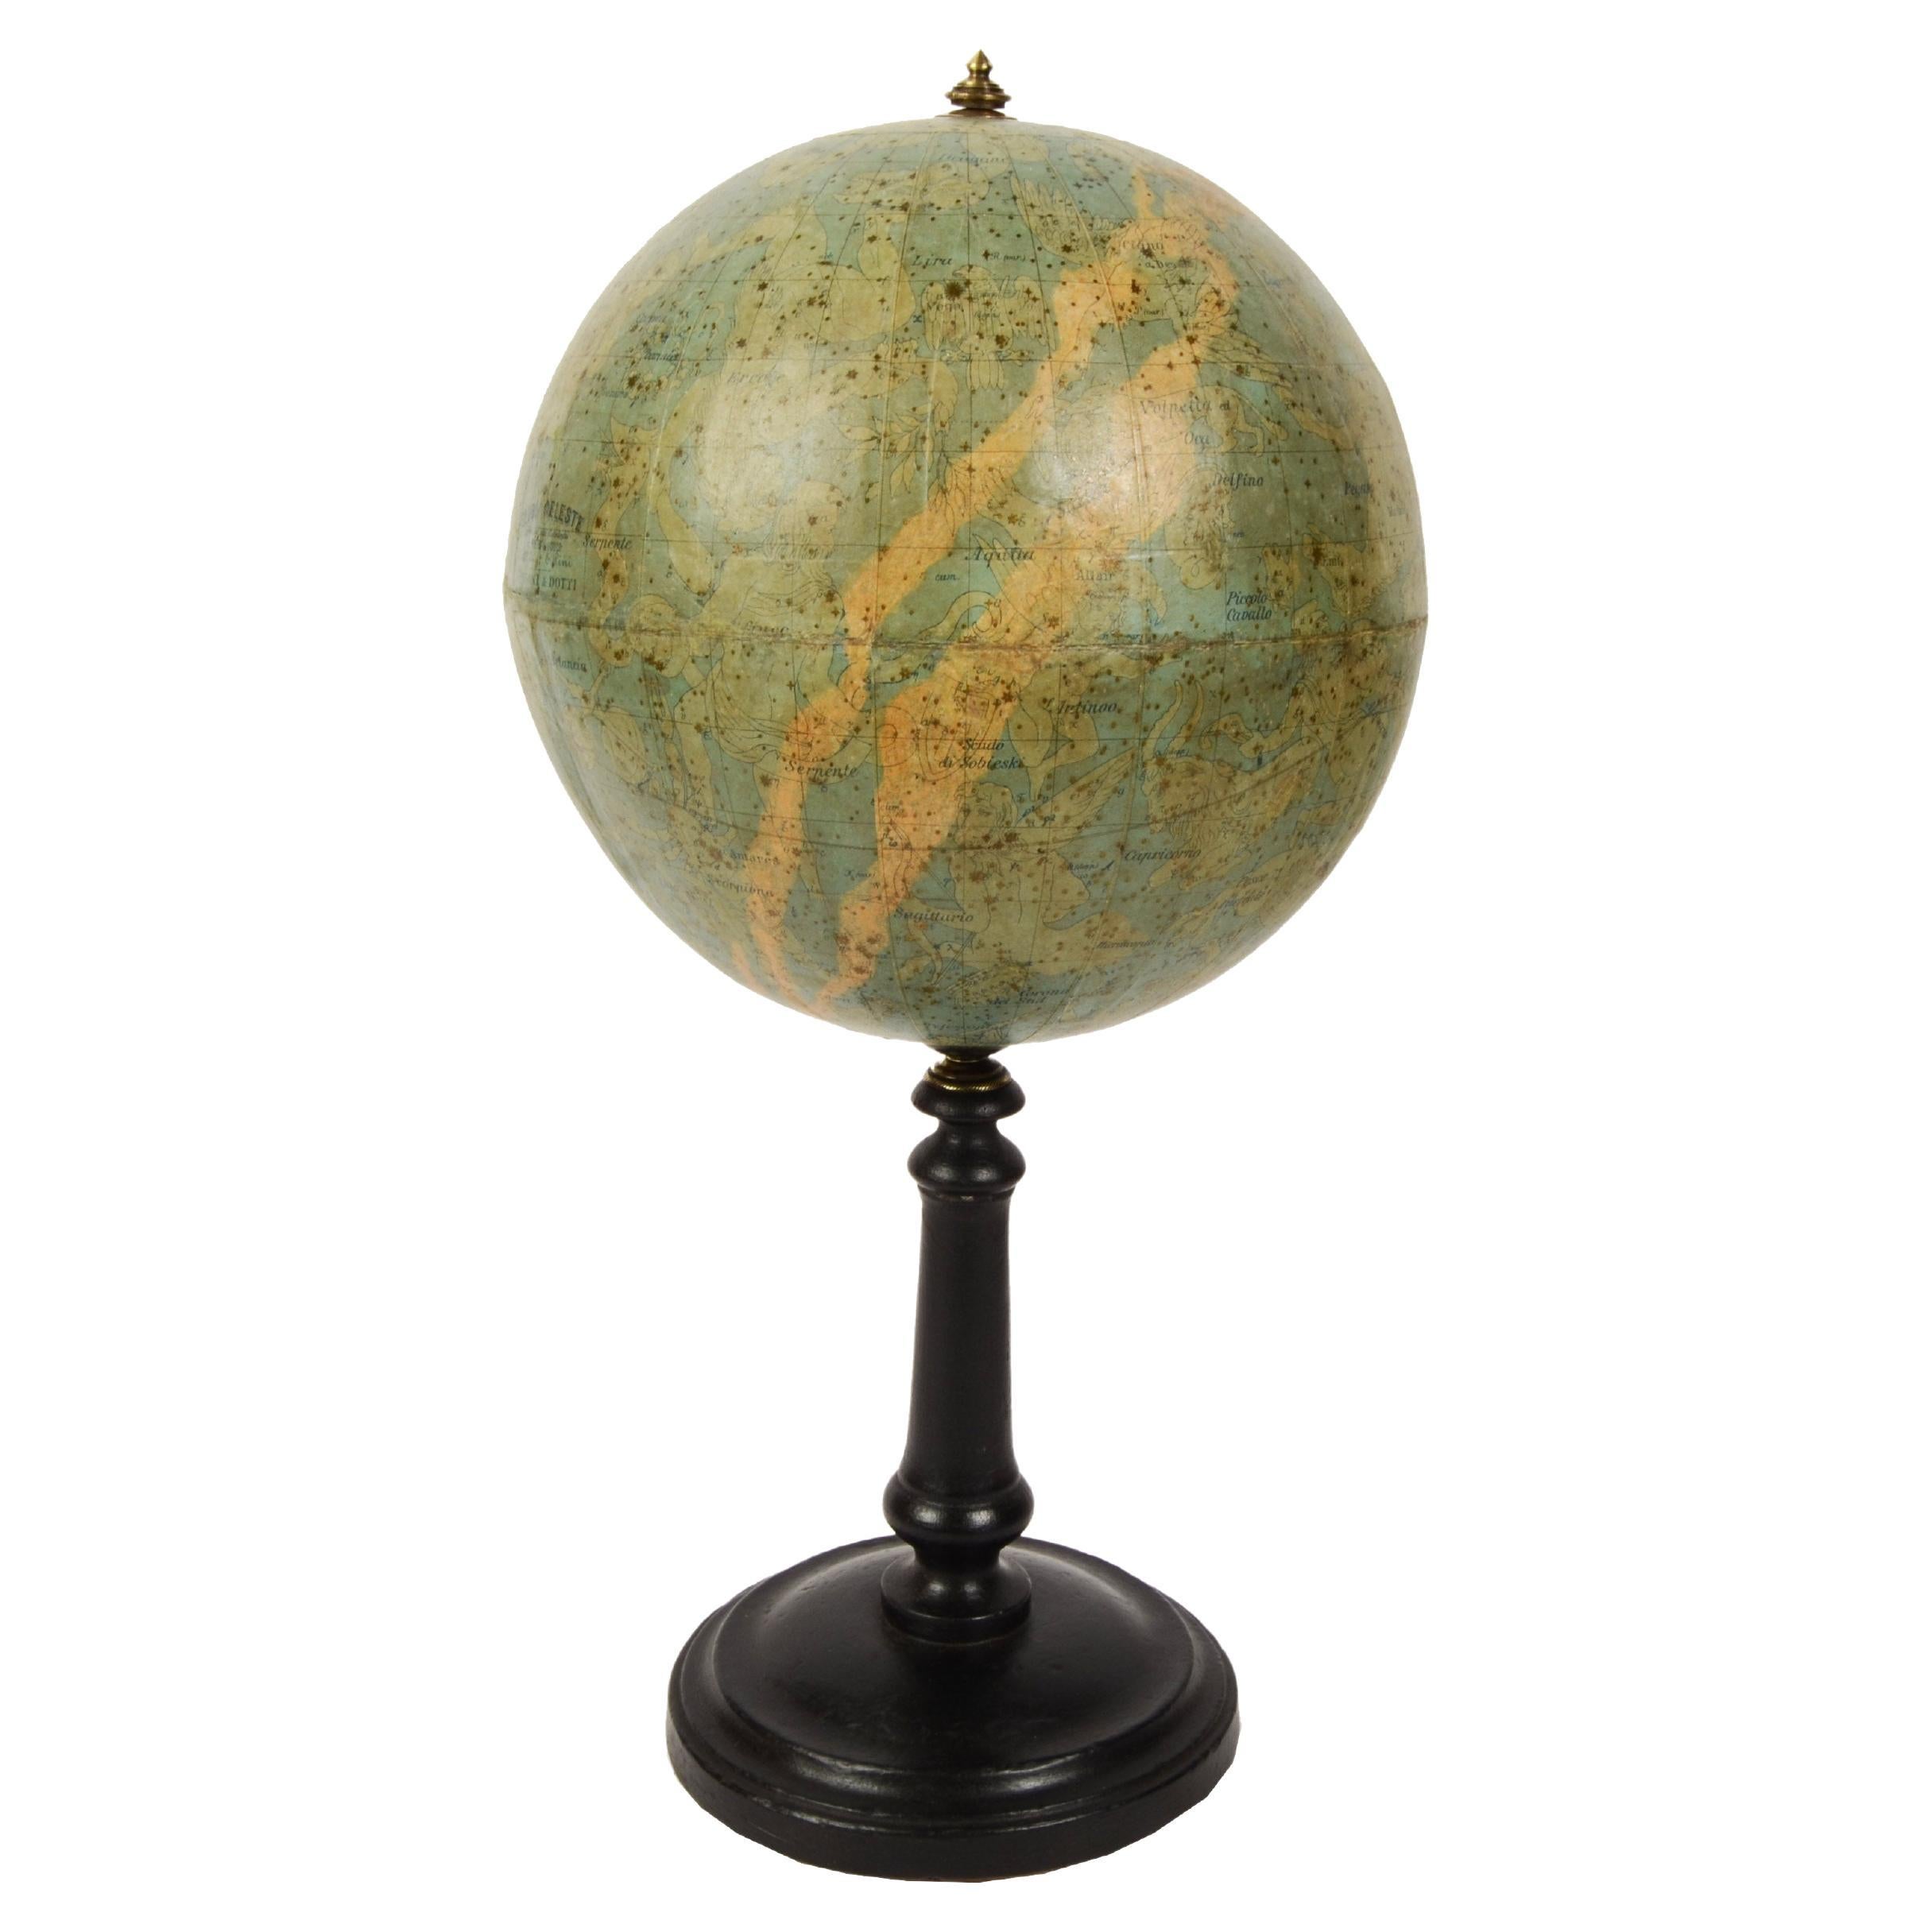 1889s Antique Celestial Globe Signed Gussoni e Dotti Milano Papier Maché Sphere For Sale